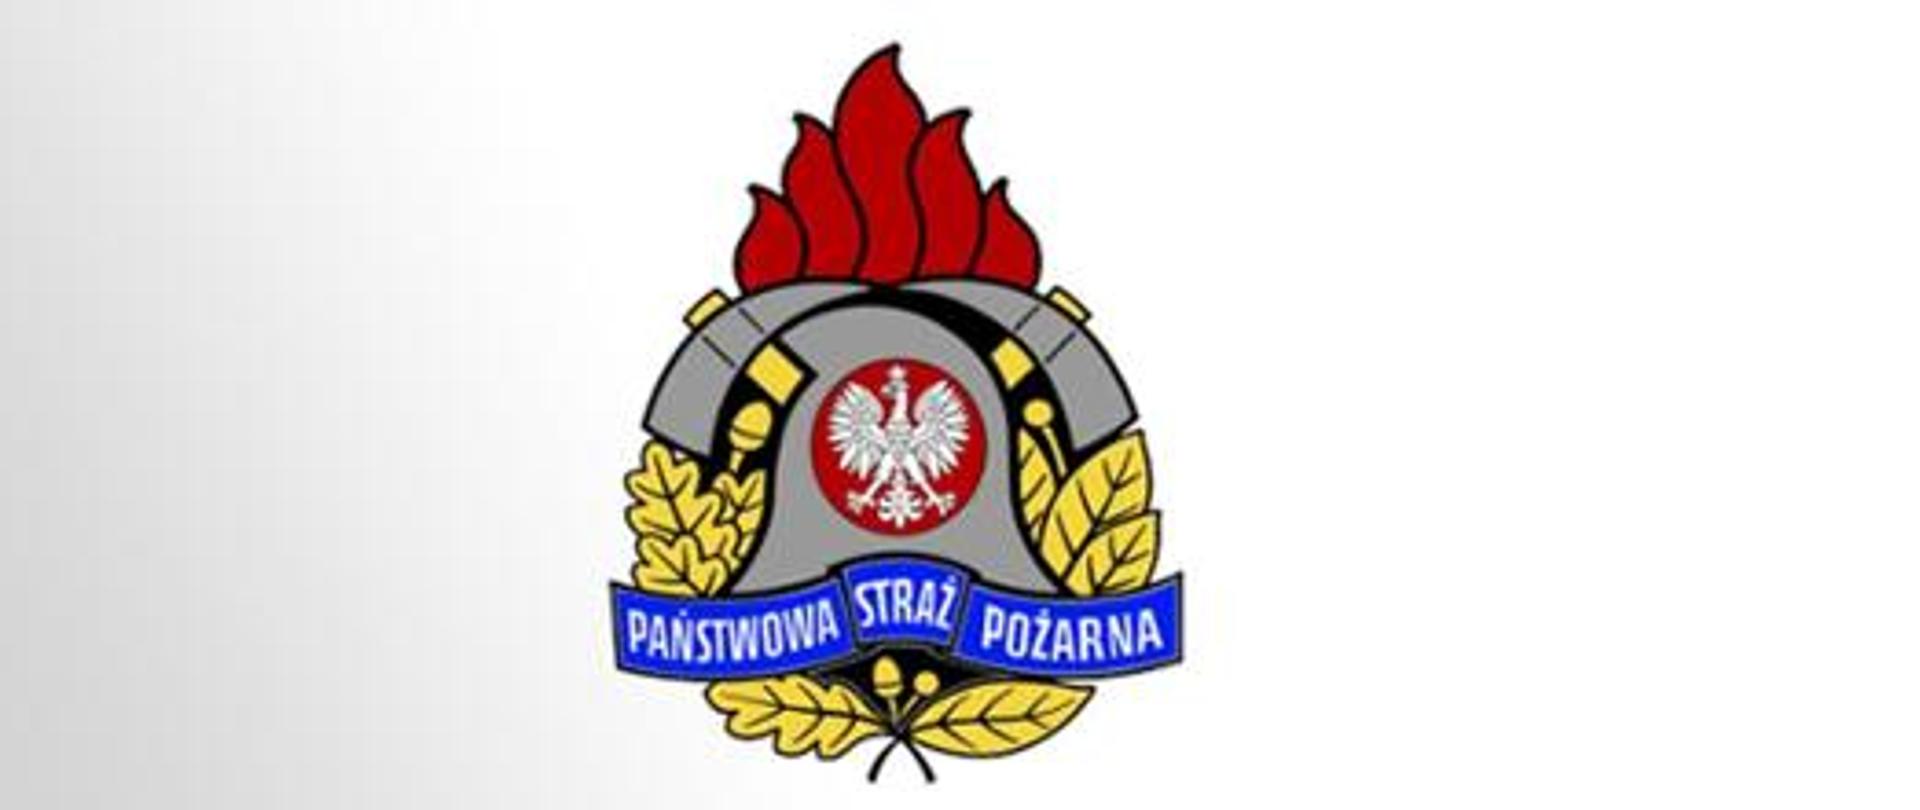 Logotyp Państwowa Straż Pożarna